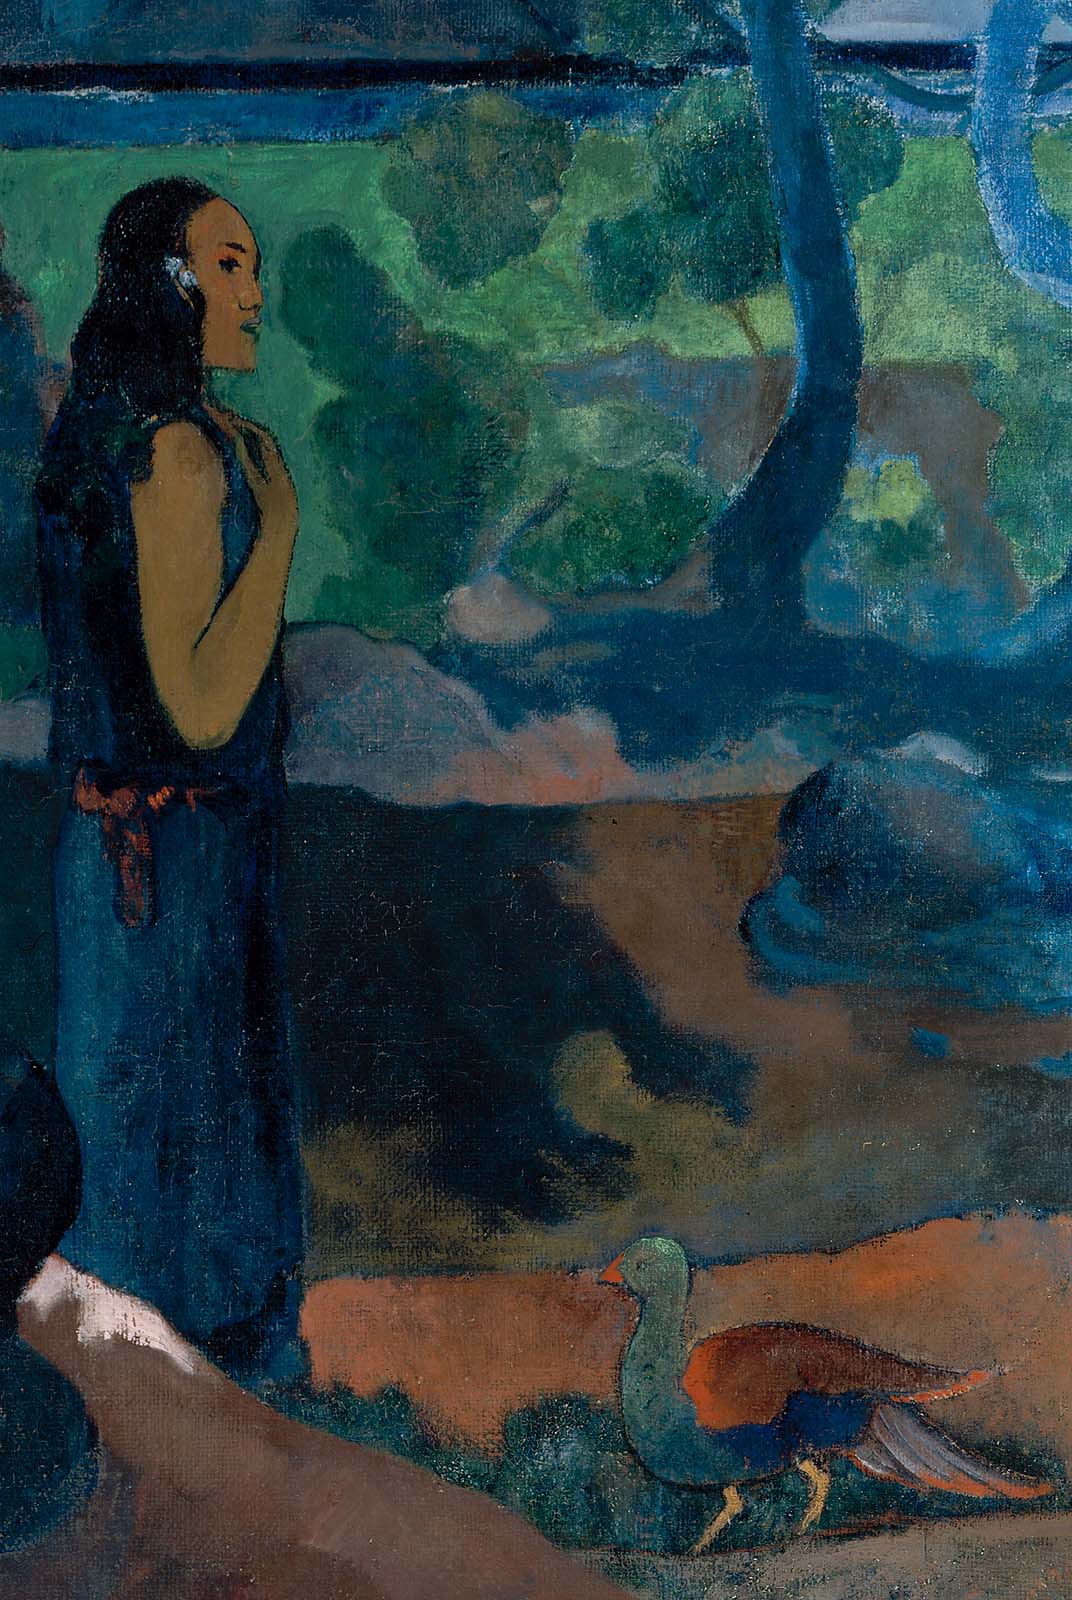 Paul+Gauguin-1848-1903 (426).jpg